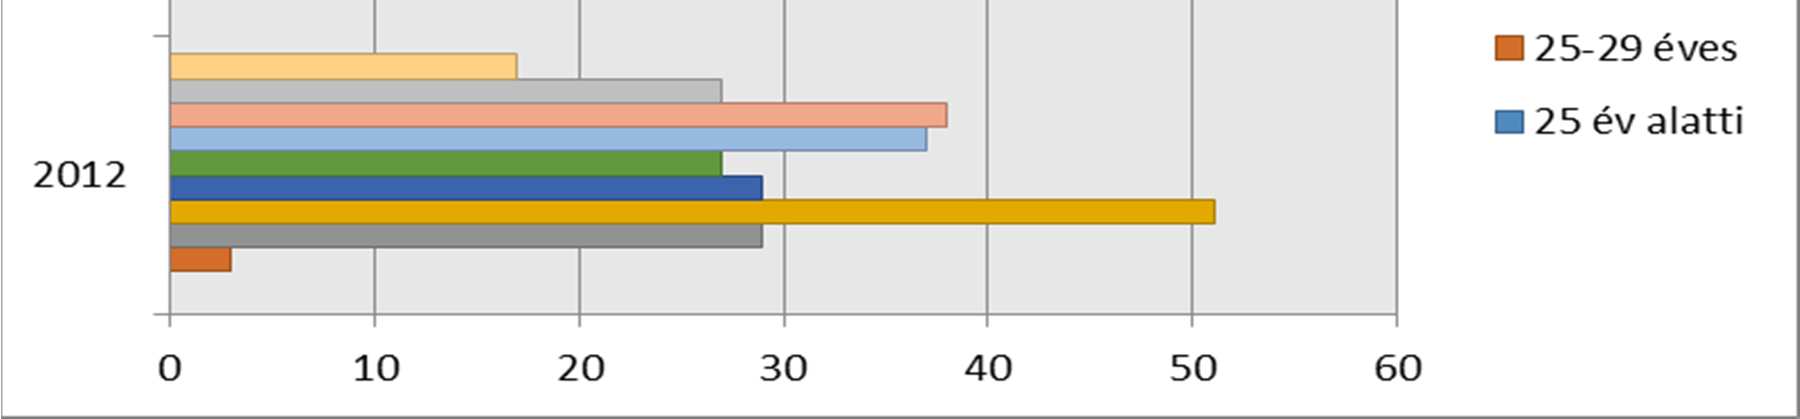 2. ábra: Az oktatók beosztás szerinti megoszlása a Nyíregyházi Főiskolán 2012-2015